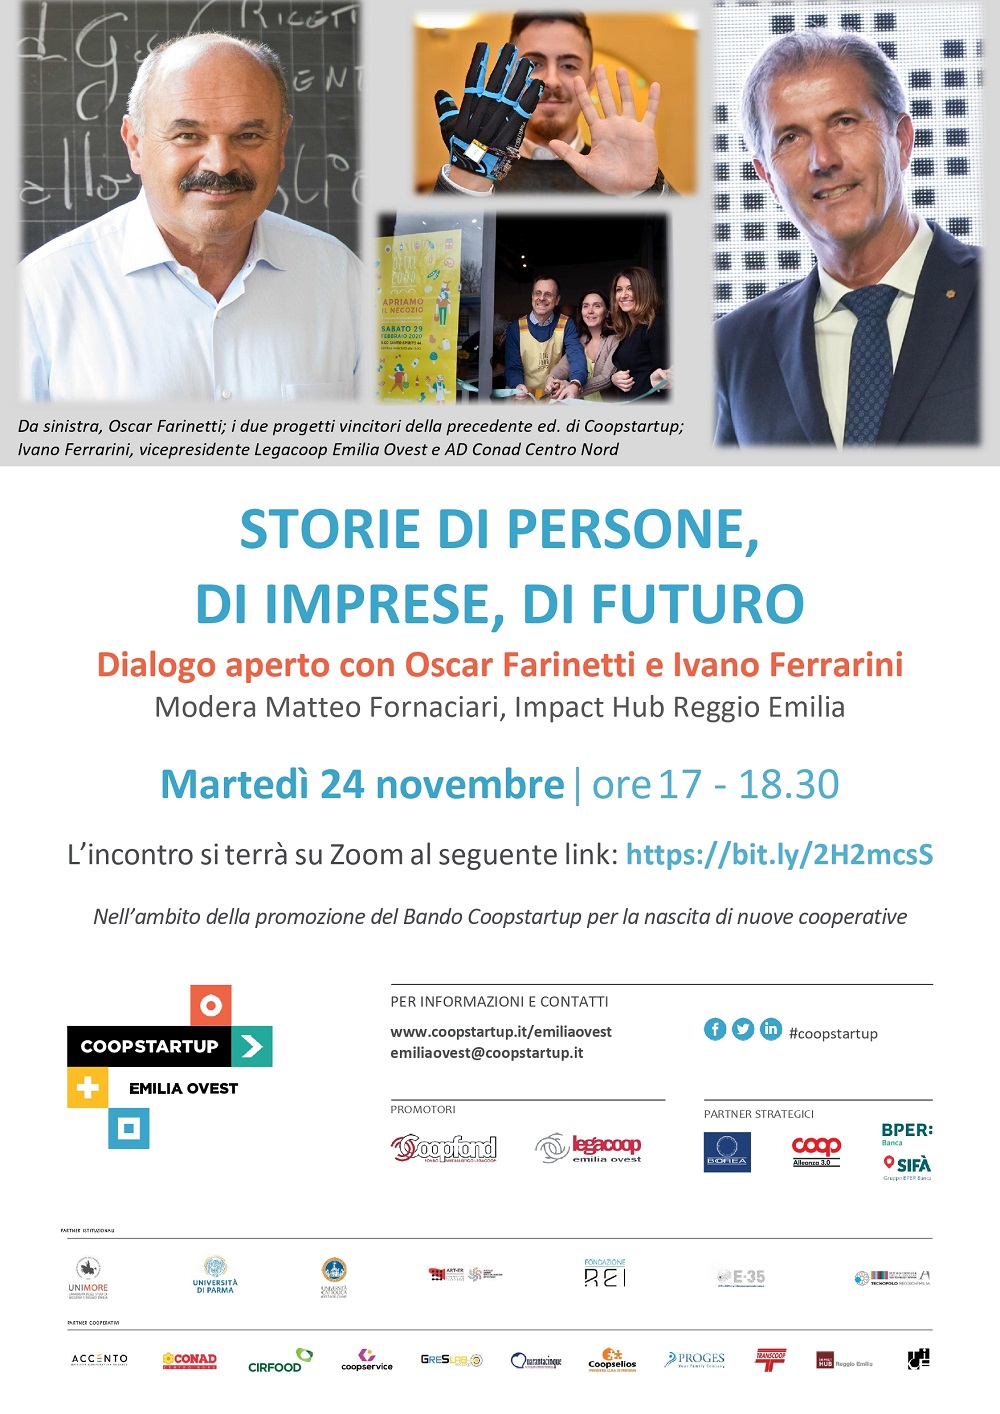 Al momento stai visualizzando “Storie di persone, di imprese, di futuro” dialogo aperto con Oscar Farinetti e Ivano Ferrarini, martedì 24 novembre alle 17